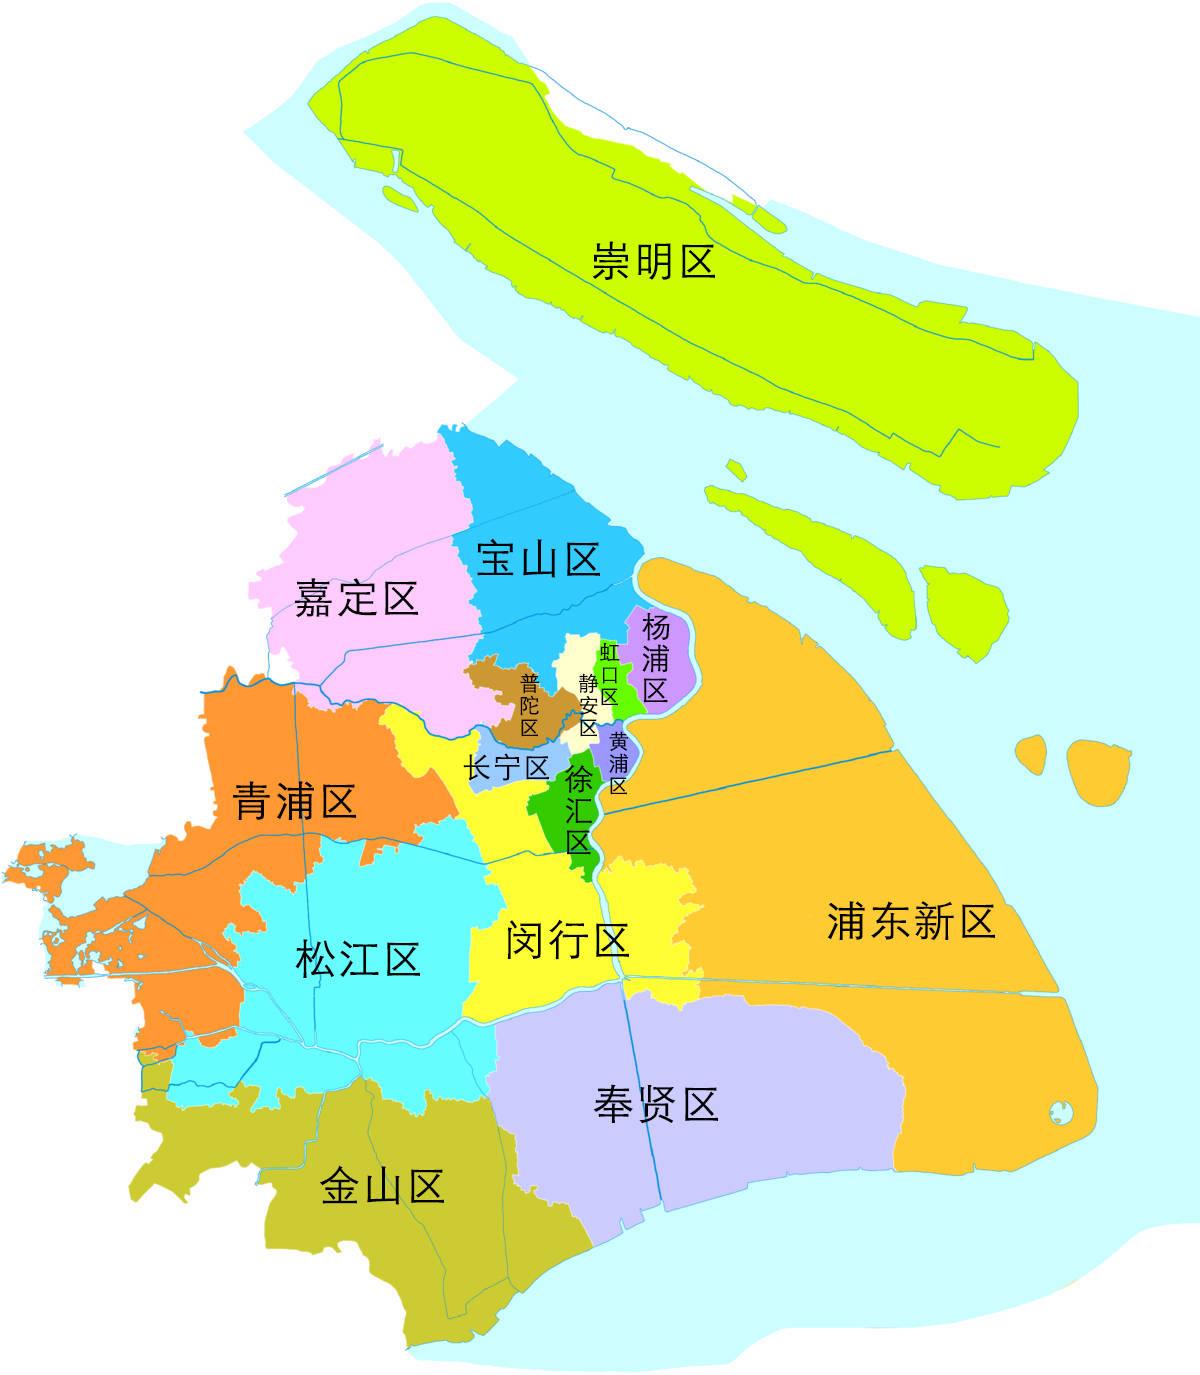 上海16个区工业实力排名:松江区第3,徐汇区第9,静安区第14!